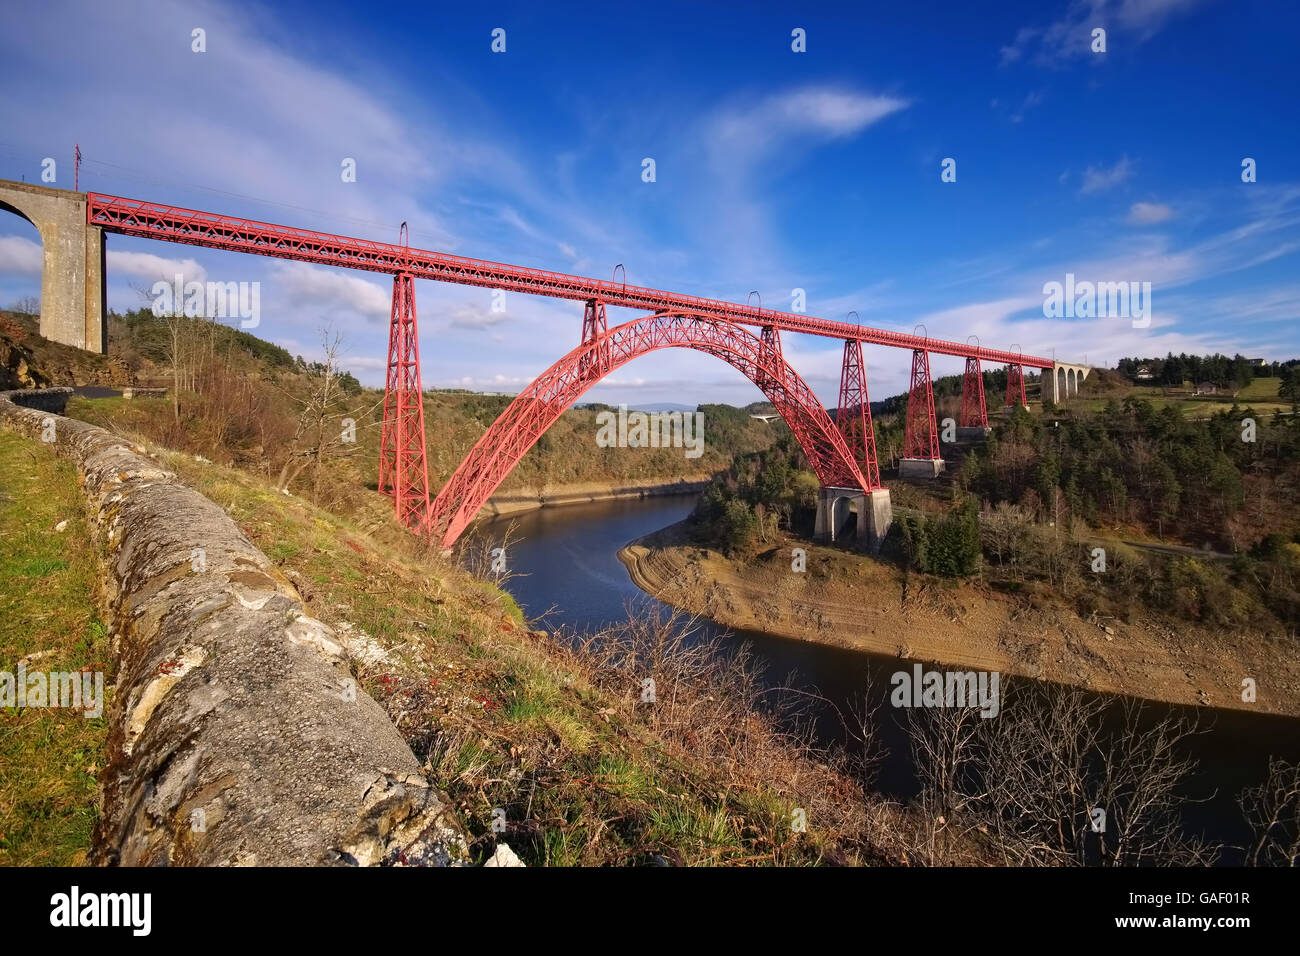 Garabit-Viadukt in Frankreich - Viaduc de Garabit en France, un célèbre pont en Europe Banque D'Images